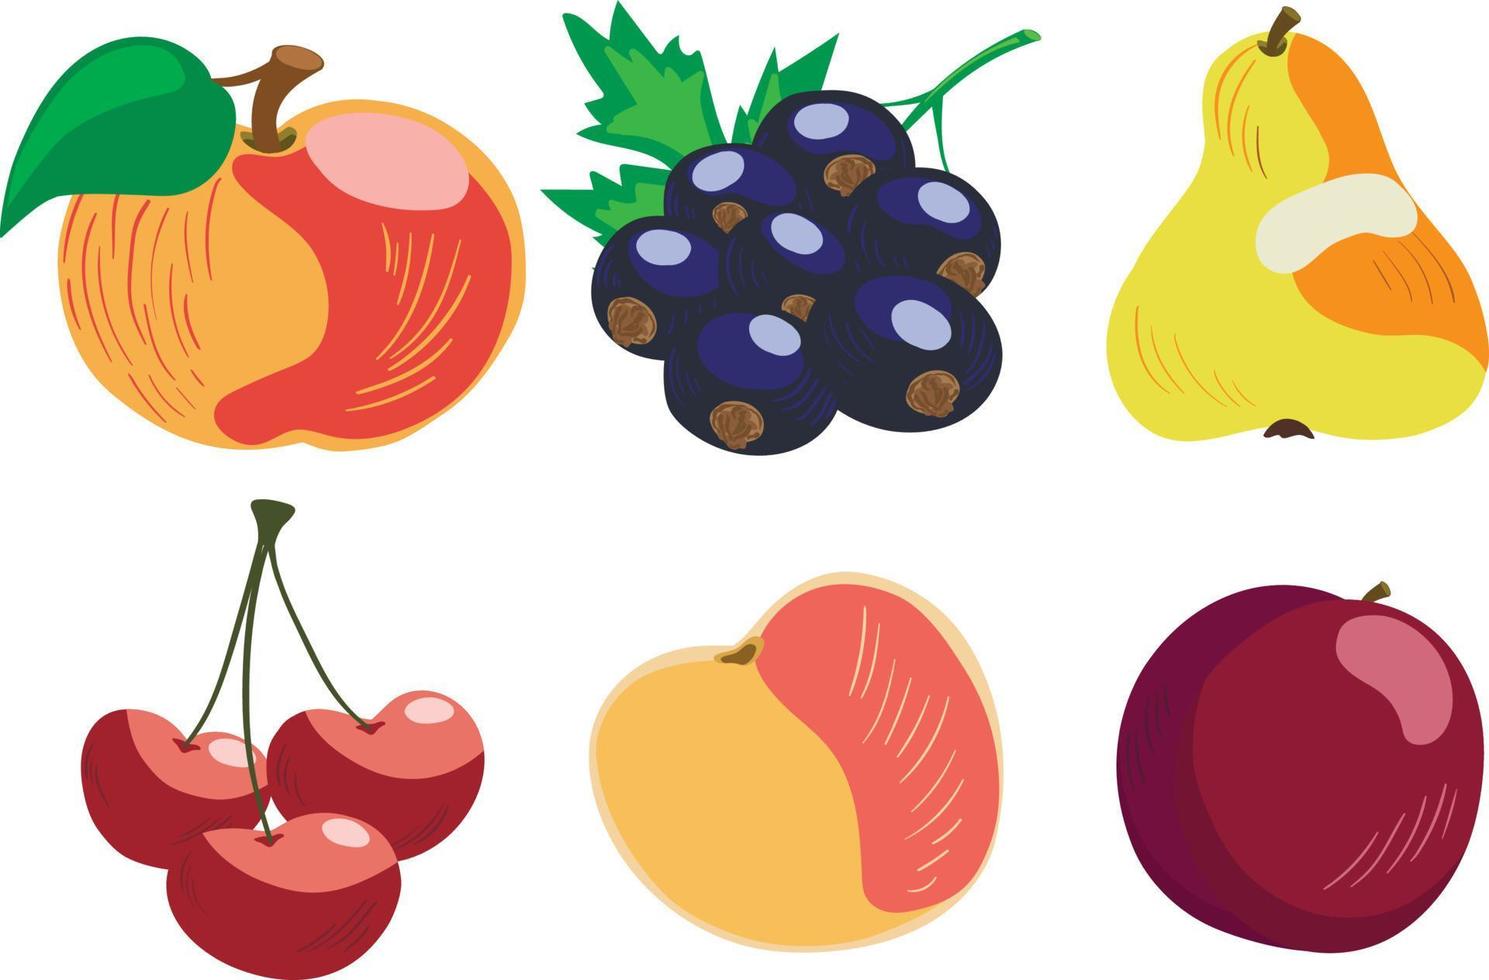 vektor uppsättning av 6 hand dragen trädgård frukter, äpple, svart vinbär, päron, körsbär, persika och plommon. isolerat på vit bakgrund.